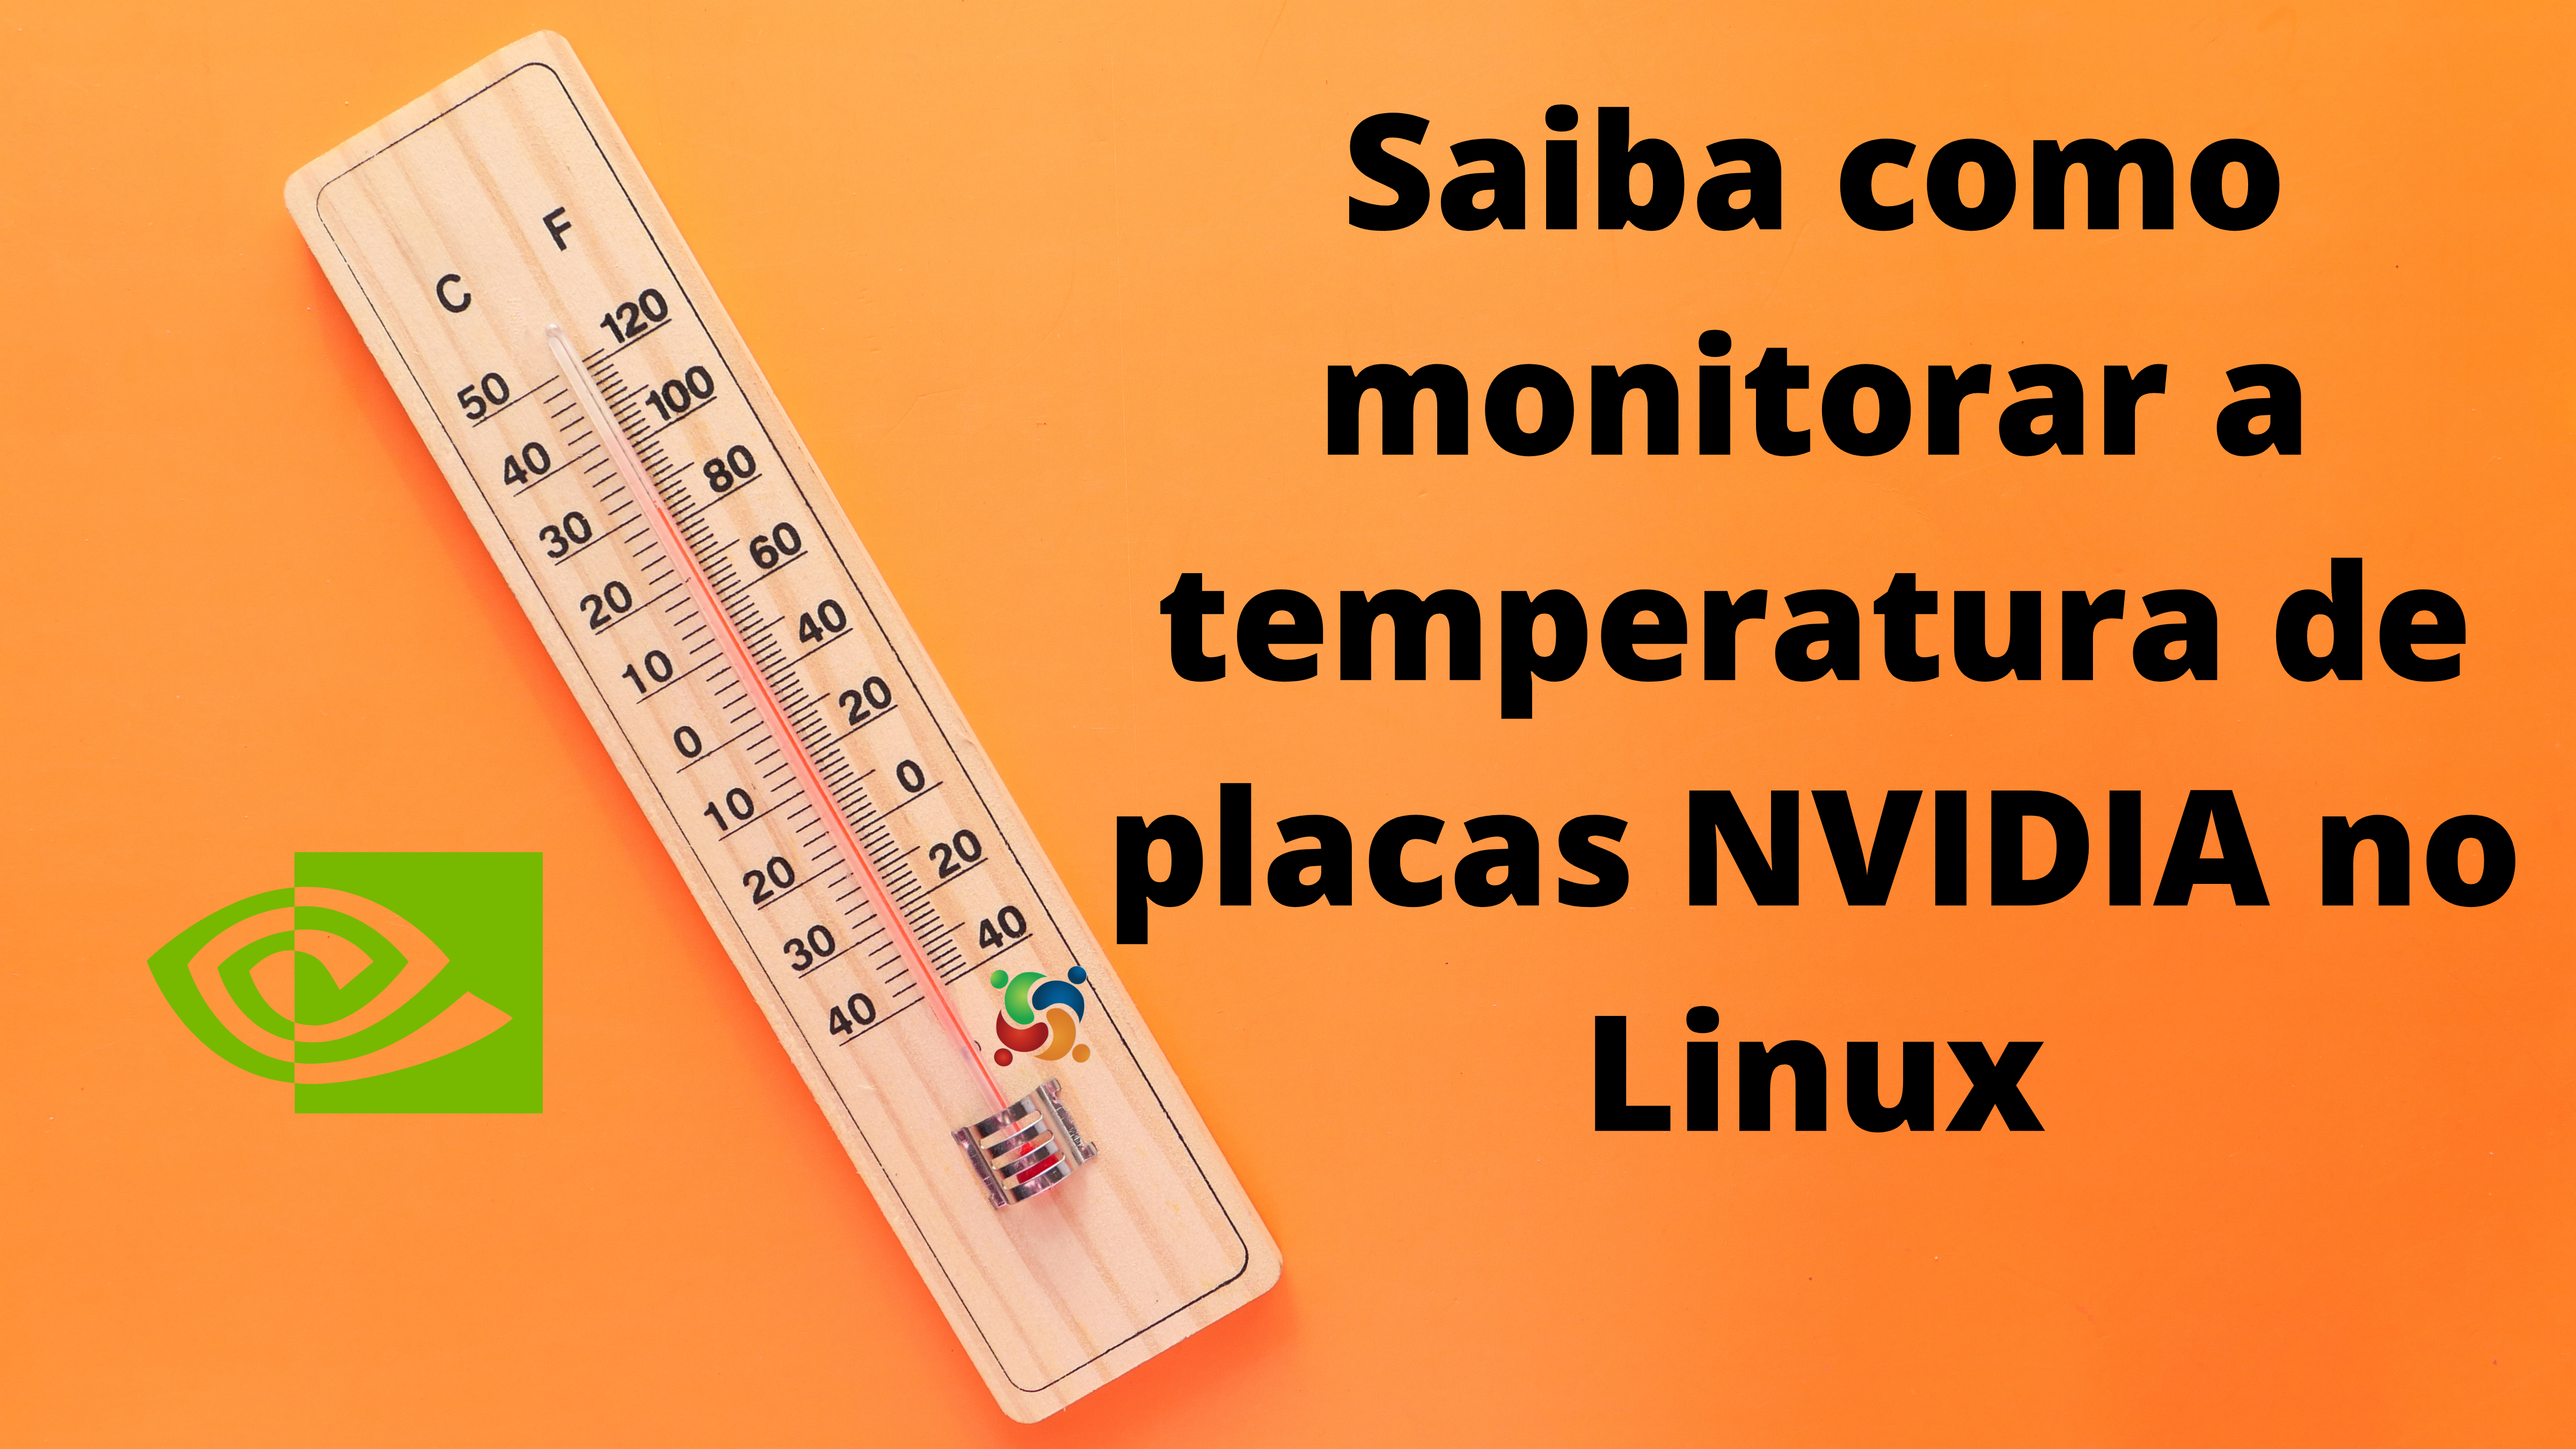 como-monitorar-a-temperatura-das-placas-nvidia-em-sistemas-linux